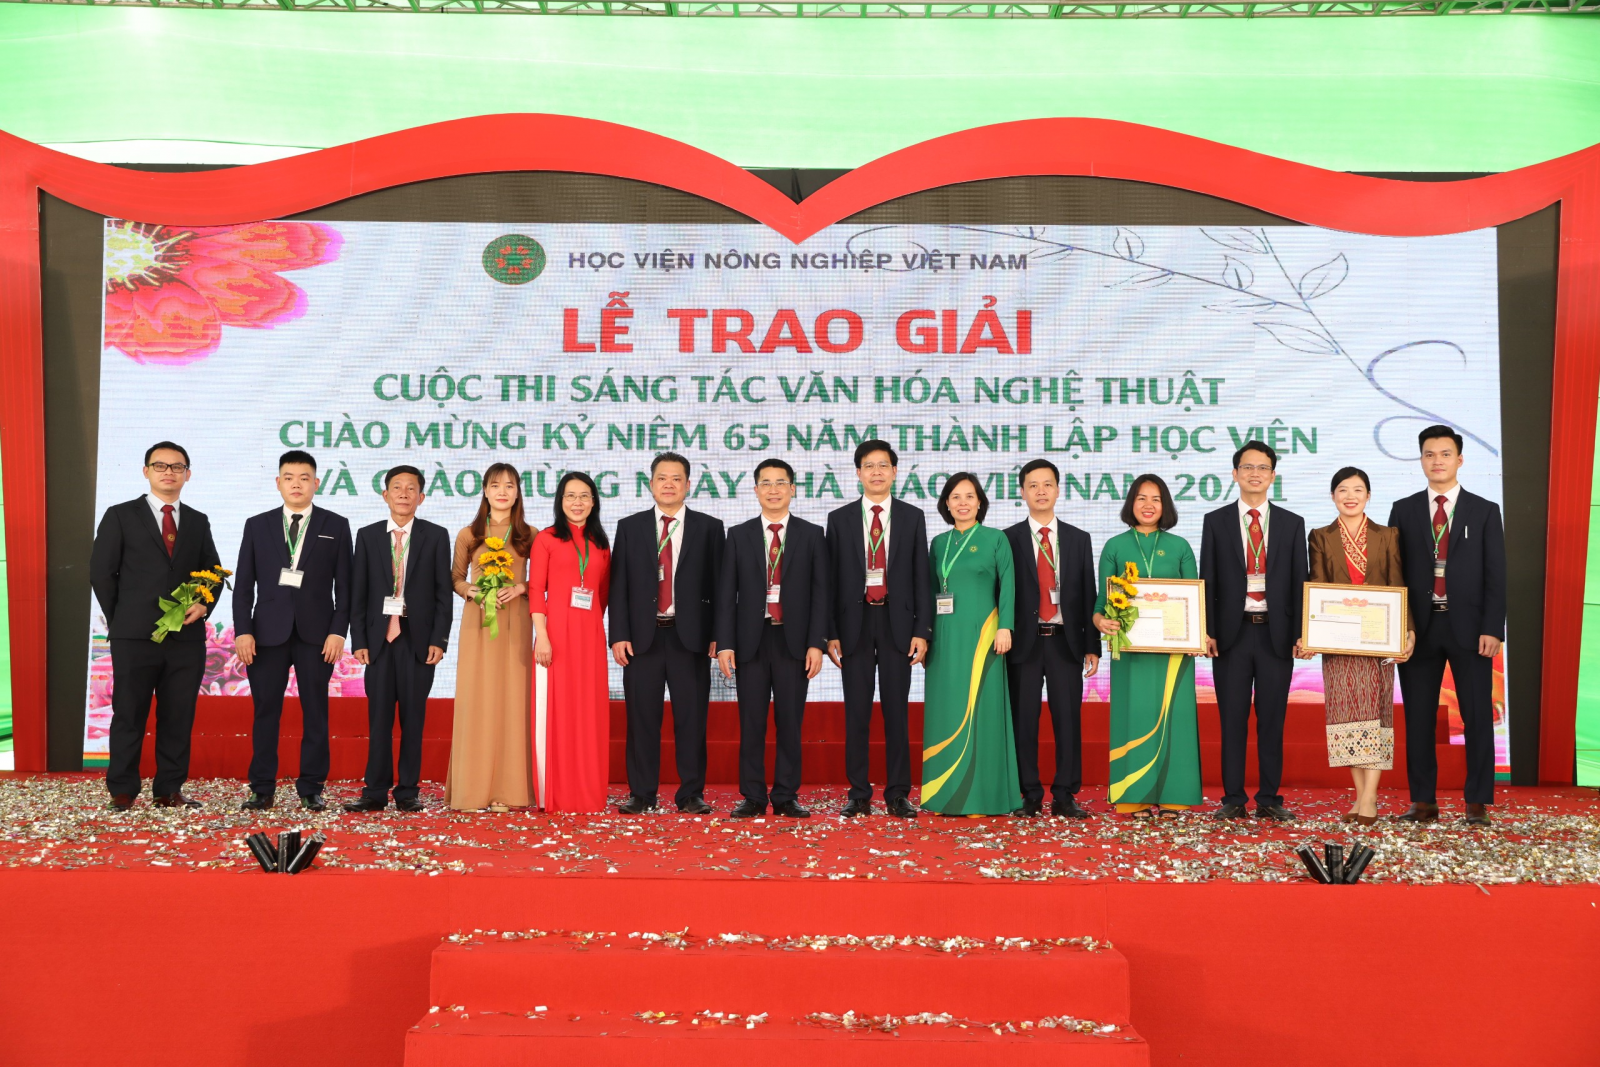 Học viện Nông nghiệp Việt Nam trao giải cho các tác phẩm văn hóa nghệ thuật - Ảnh minh hoạ 3